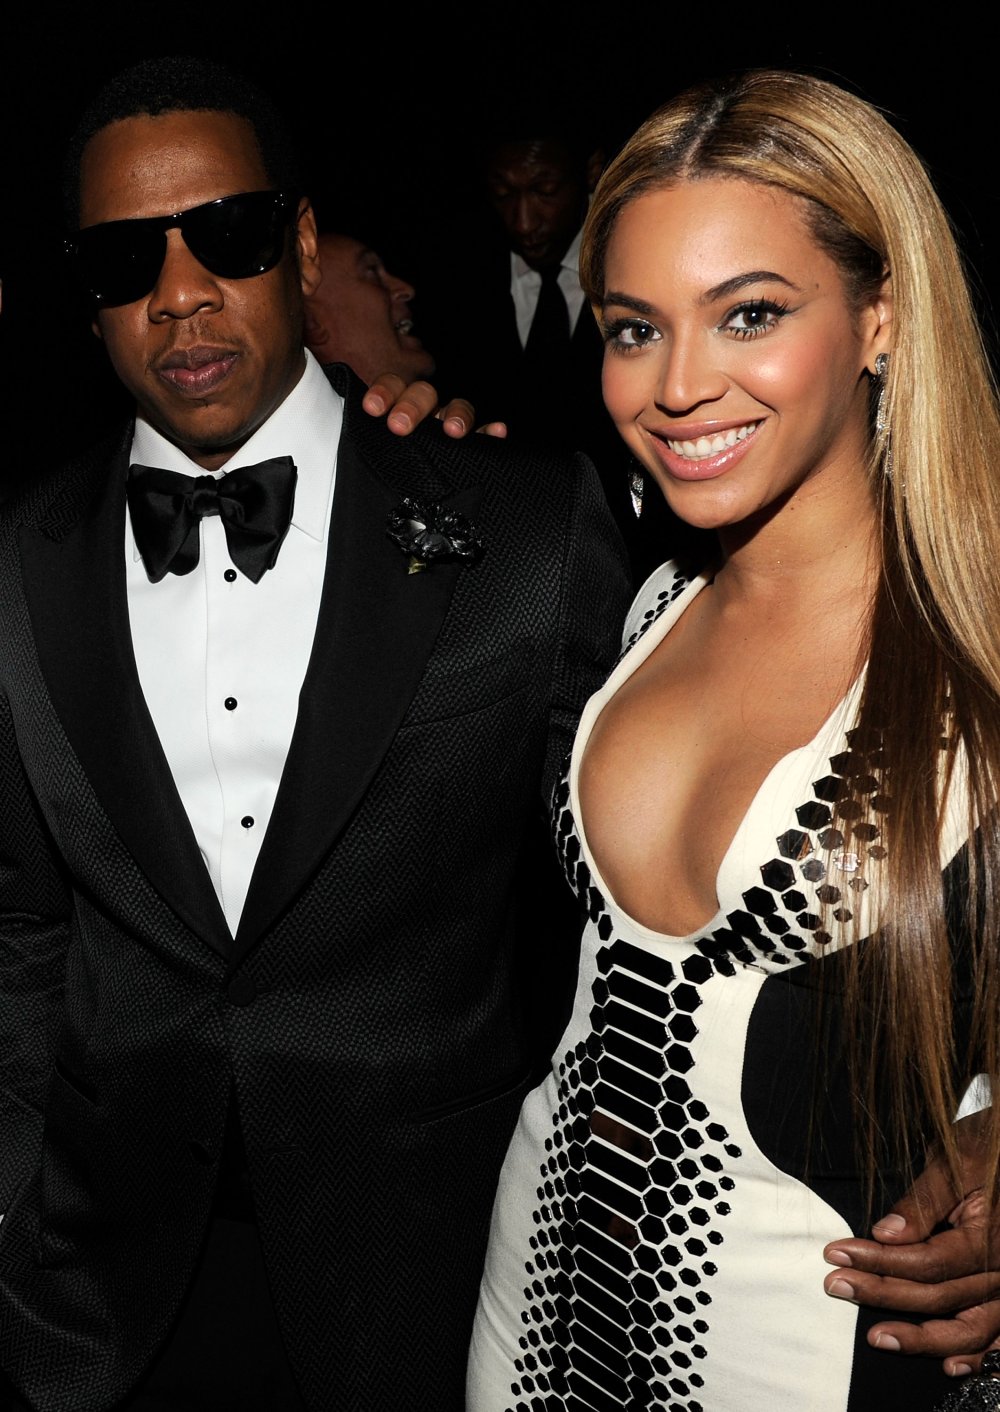 Jay Z kupił Beyonce jajo smoka z "Gry o tron"